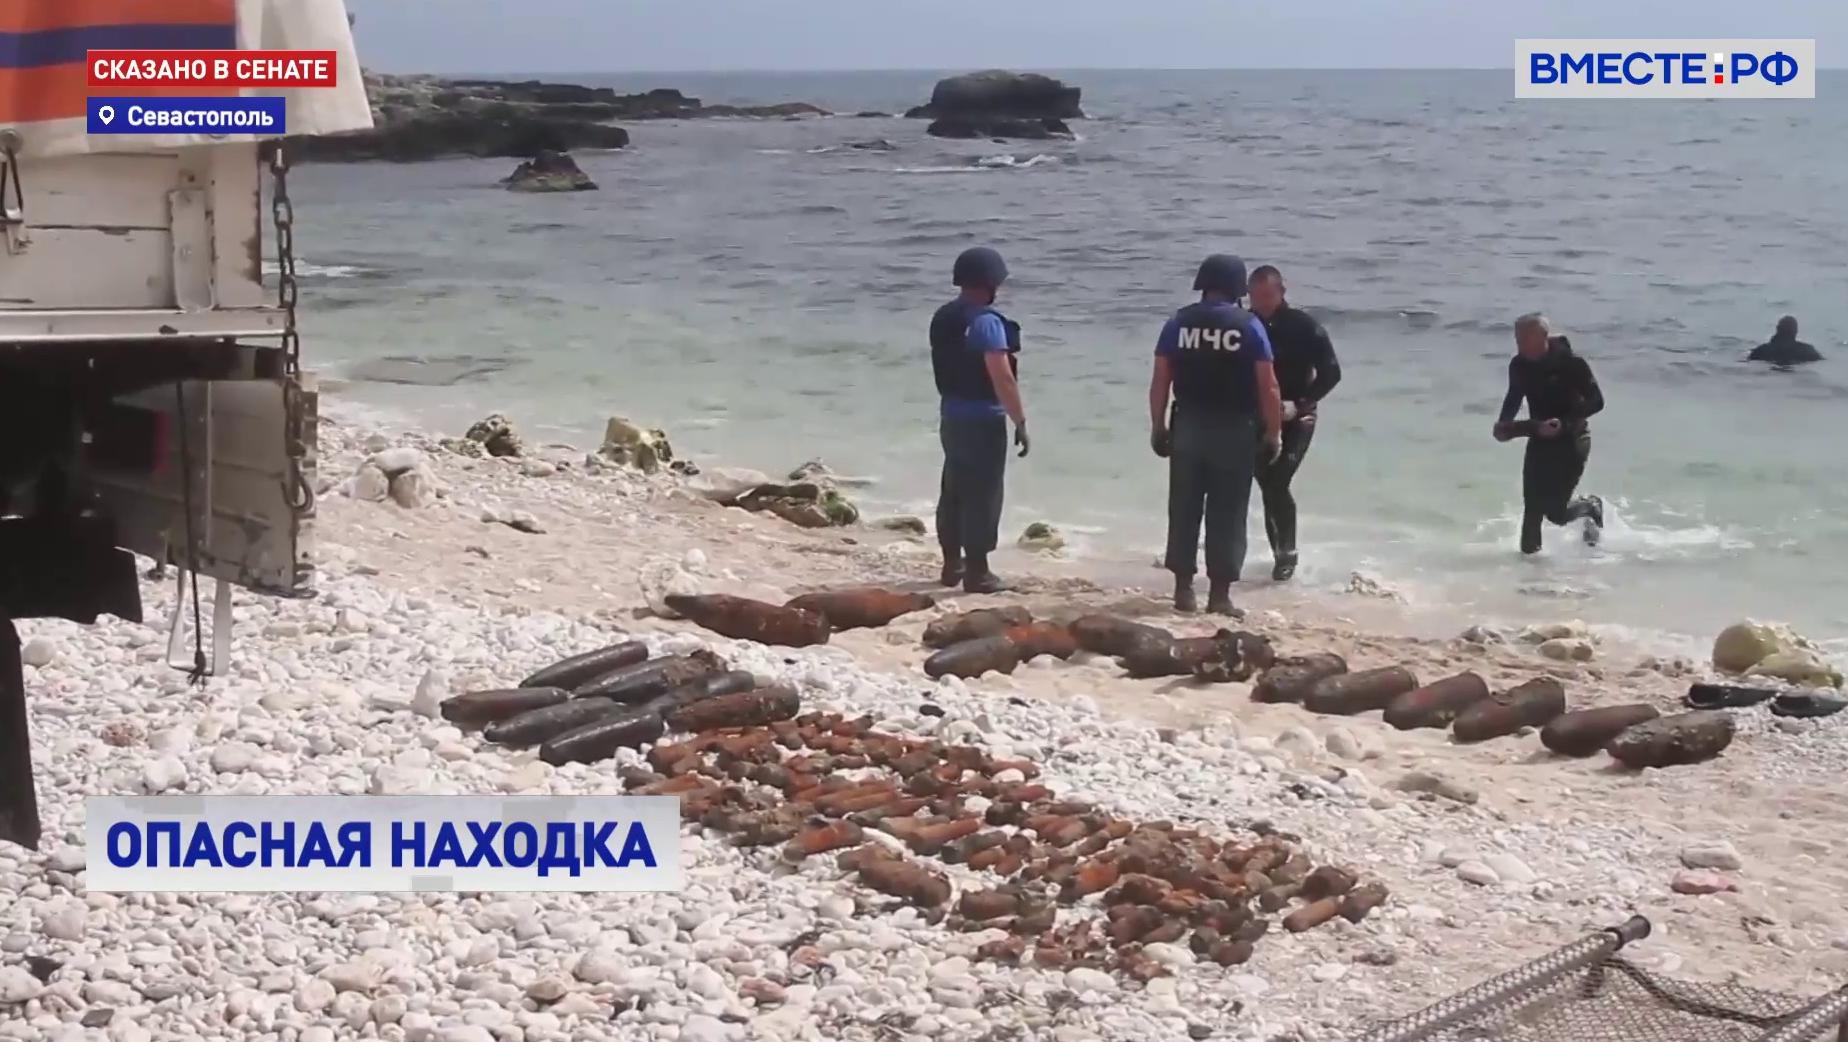 Около 250 боеприпасов времен войны нашли на дне моря в Севастополе